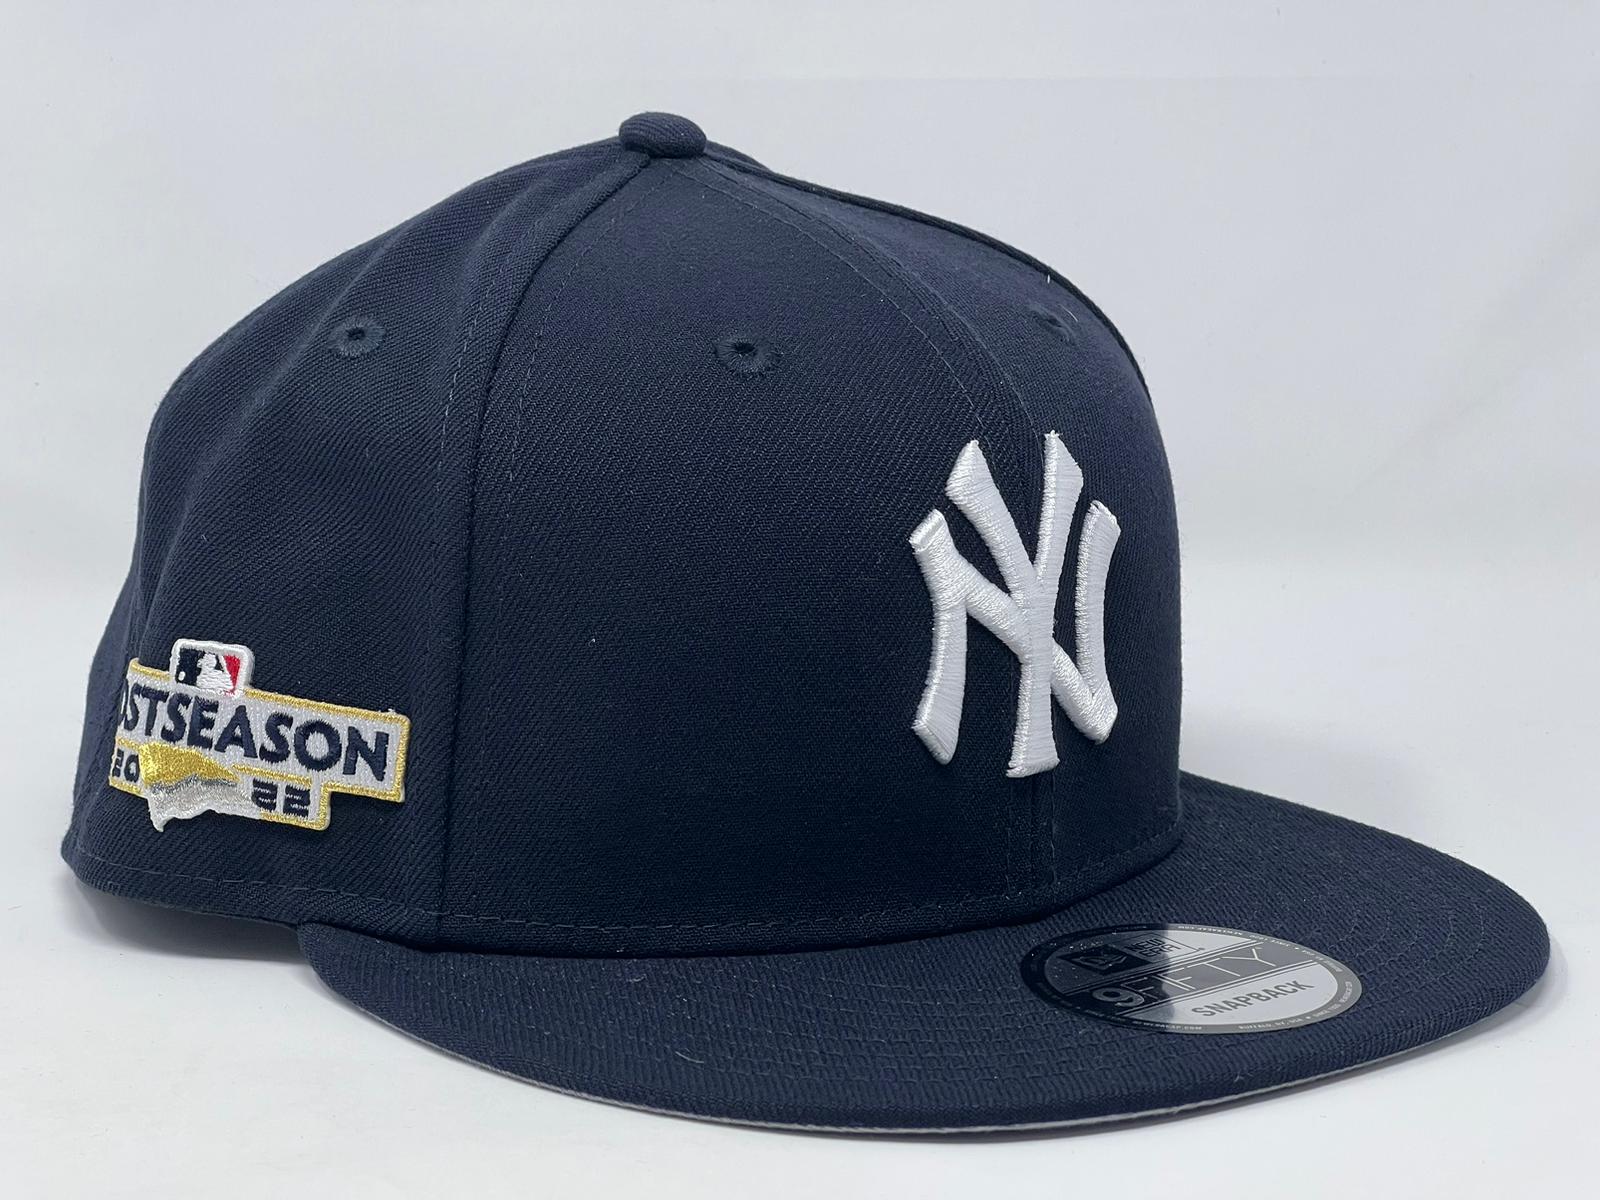 New York New Leader Splash Yankees Colors Top Hat Gray Blue Era Snapback  Hat Cap